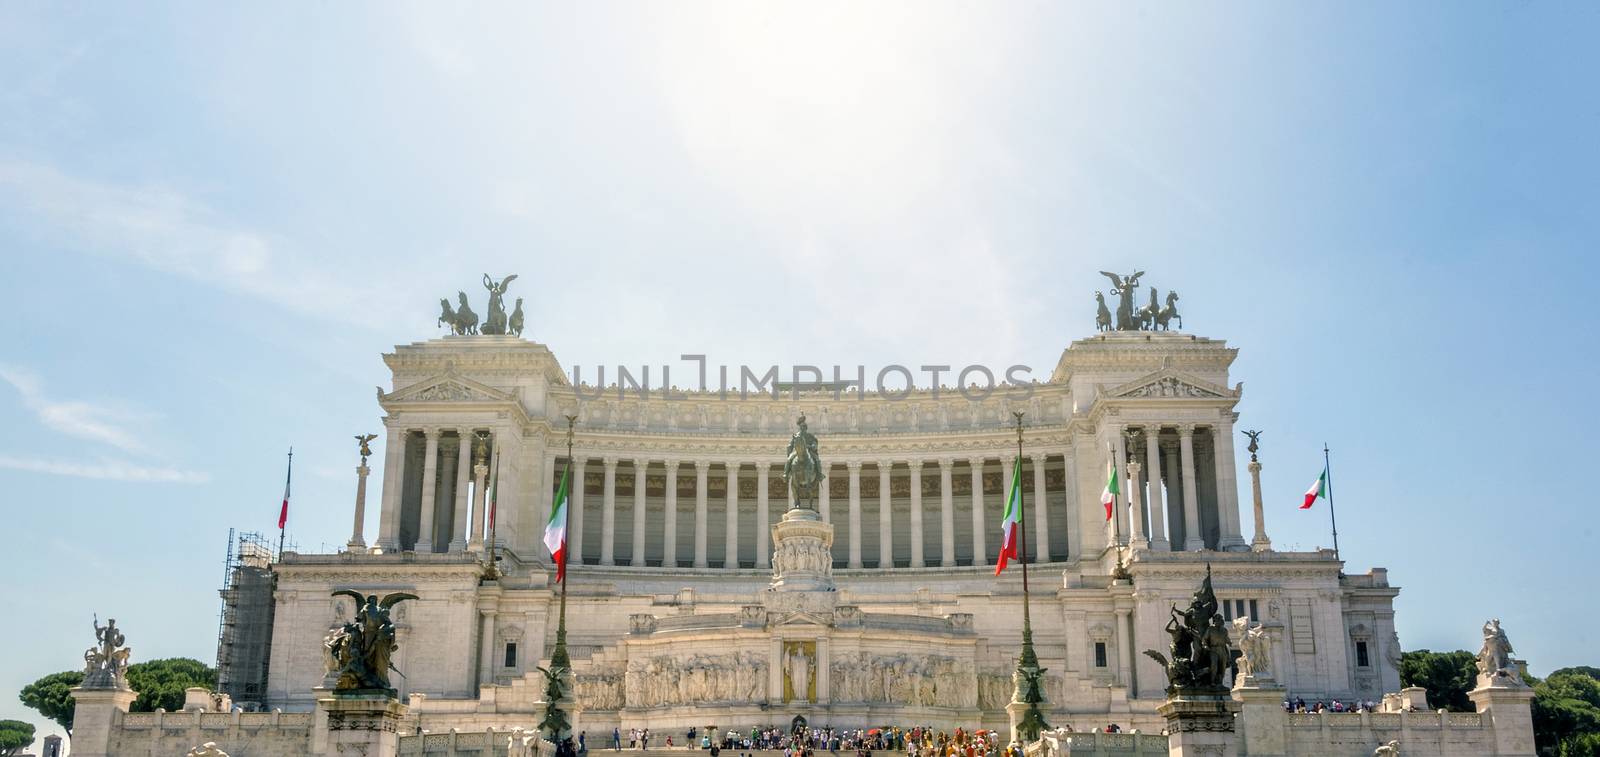 Vittoriano Memorial in Piazza Venezia, Rome by rarrarorro